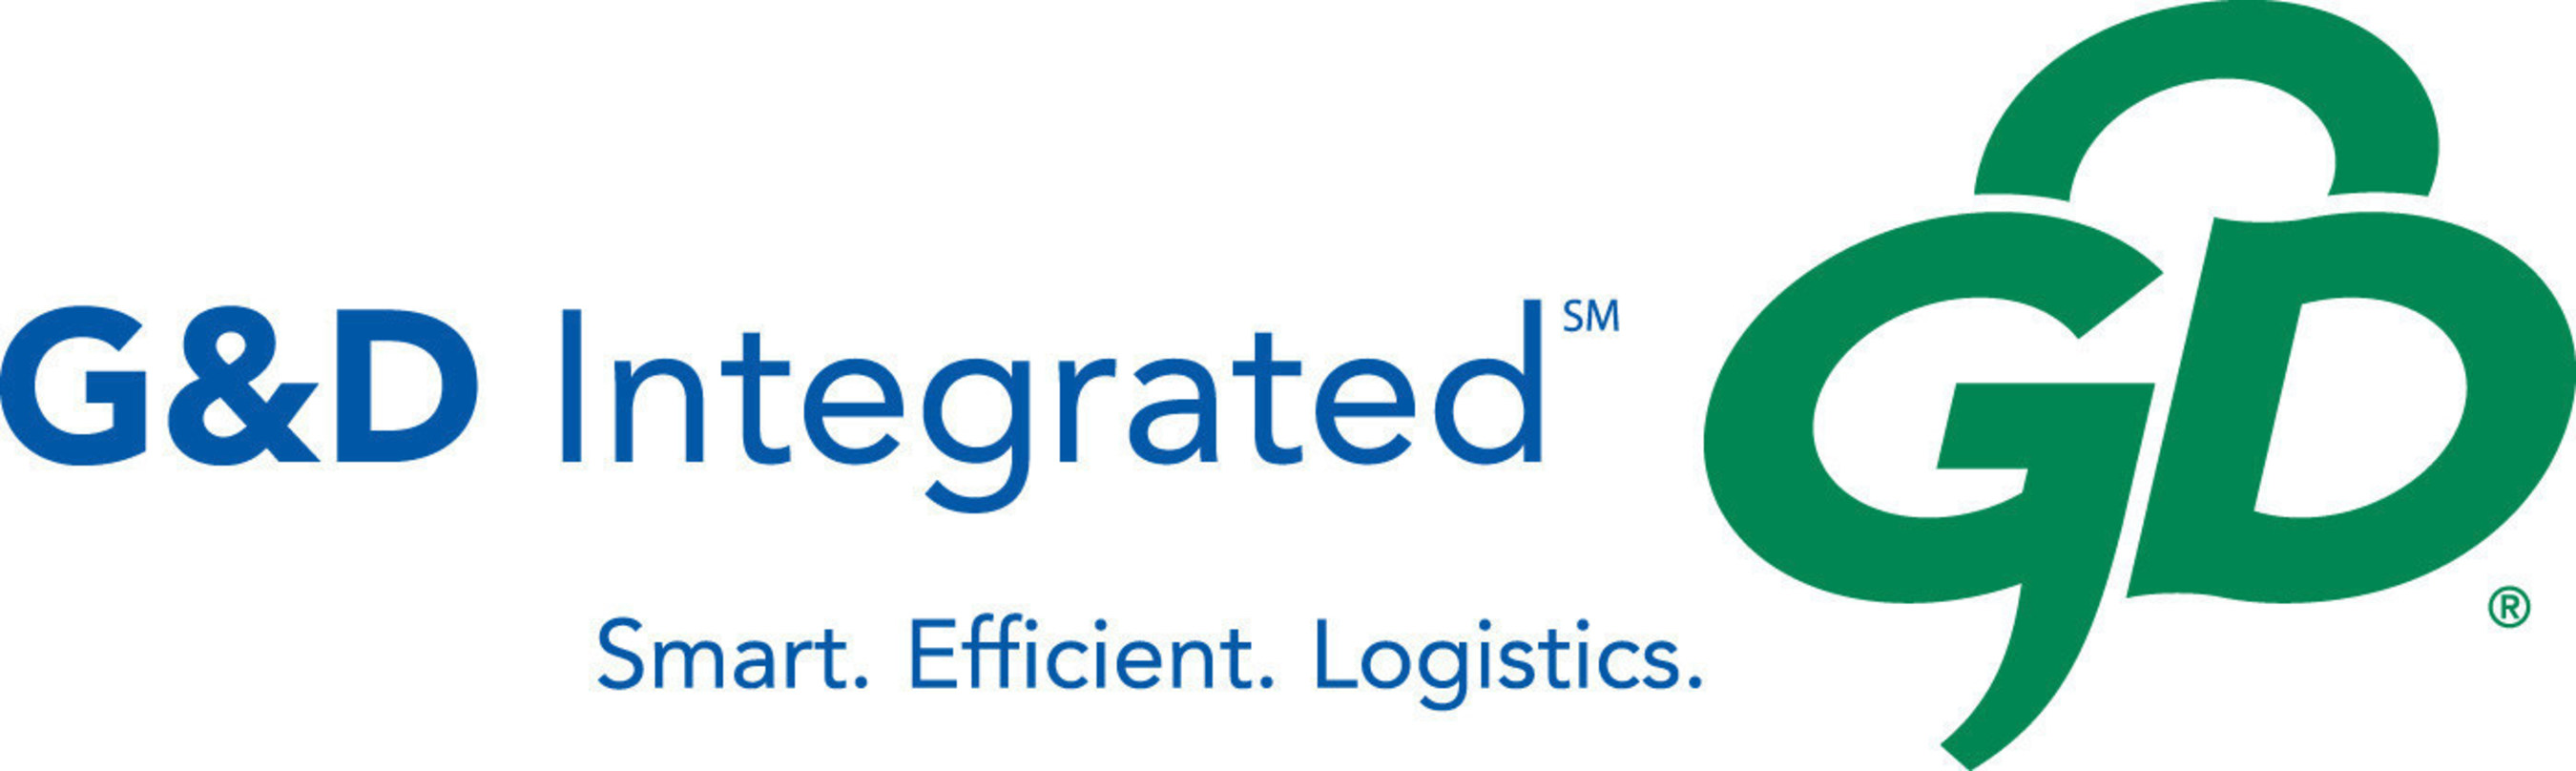 G&D Integrated logo. (PRNewsFoto/G&D Integrated)